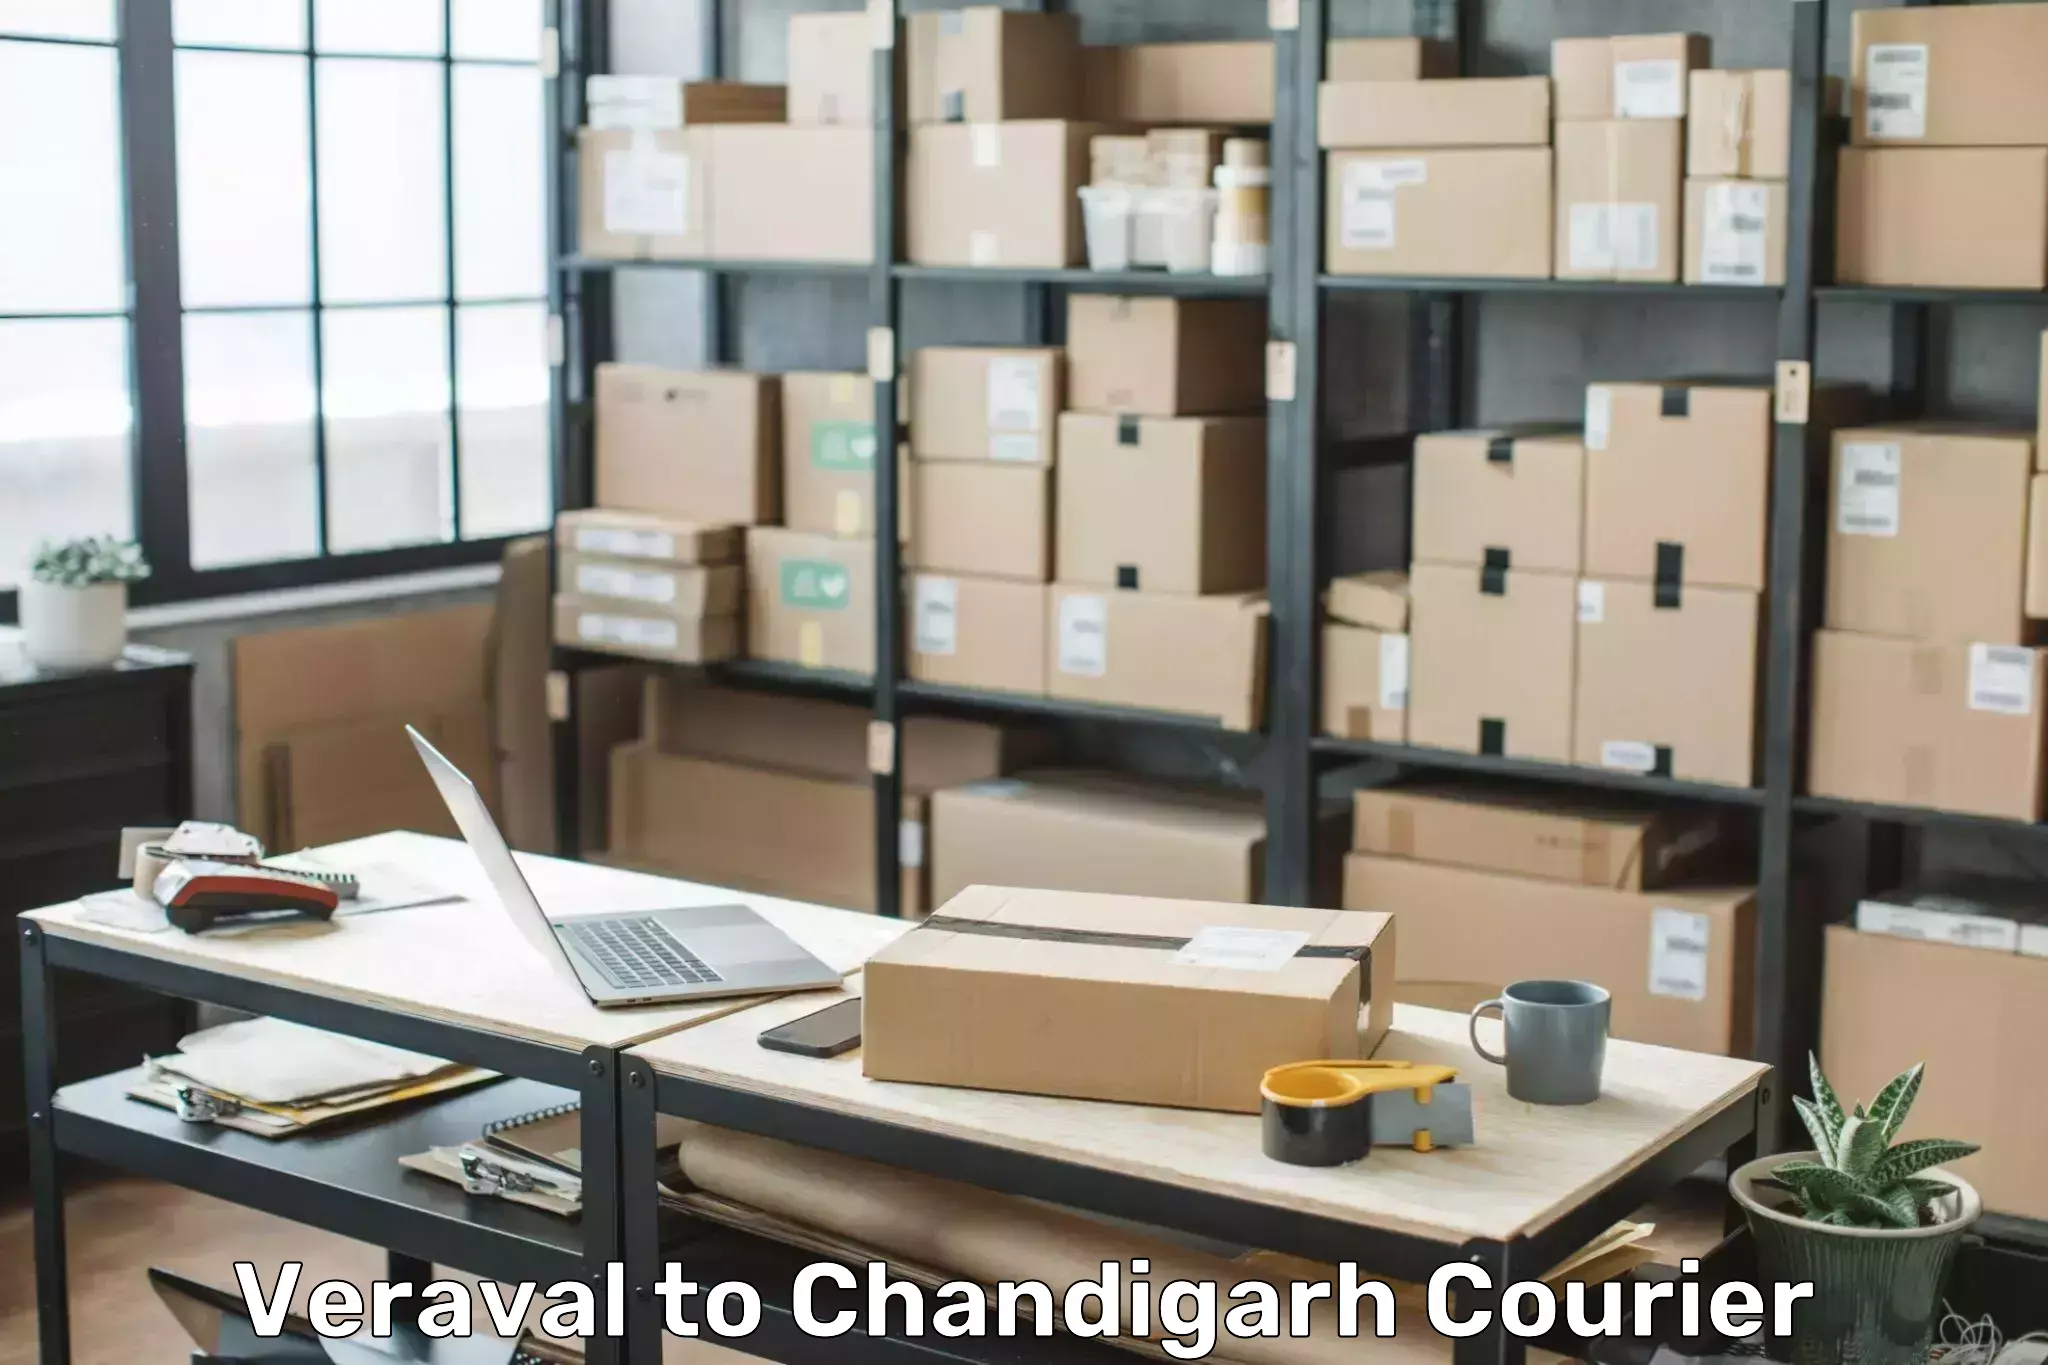 Door-to-door baggage service Veraval to Chandigarh